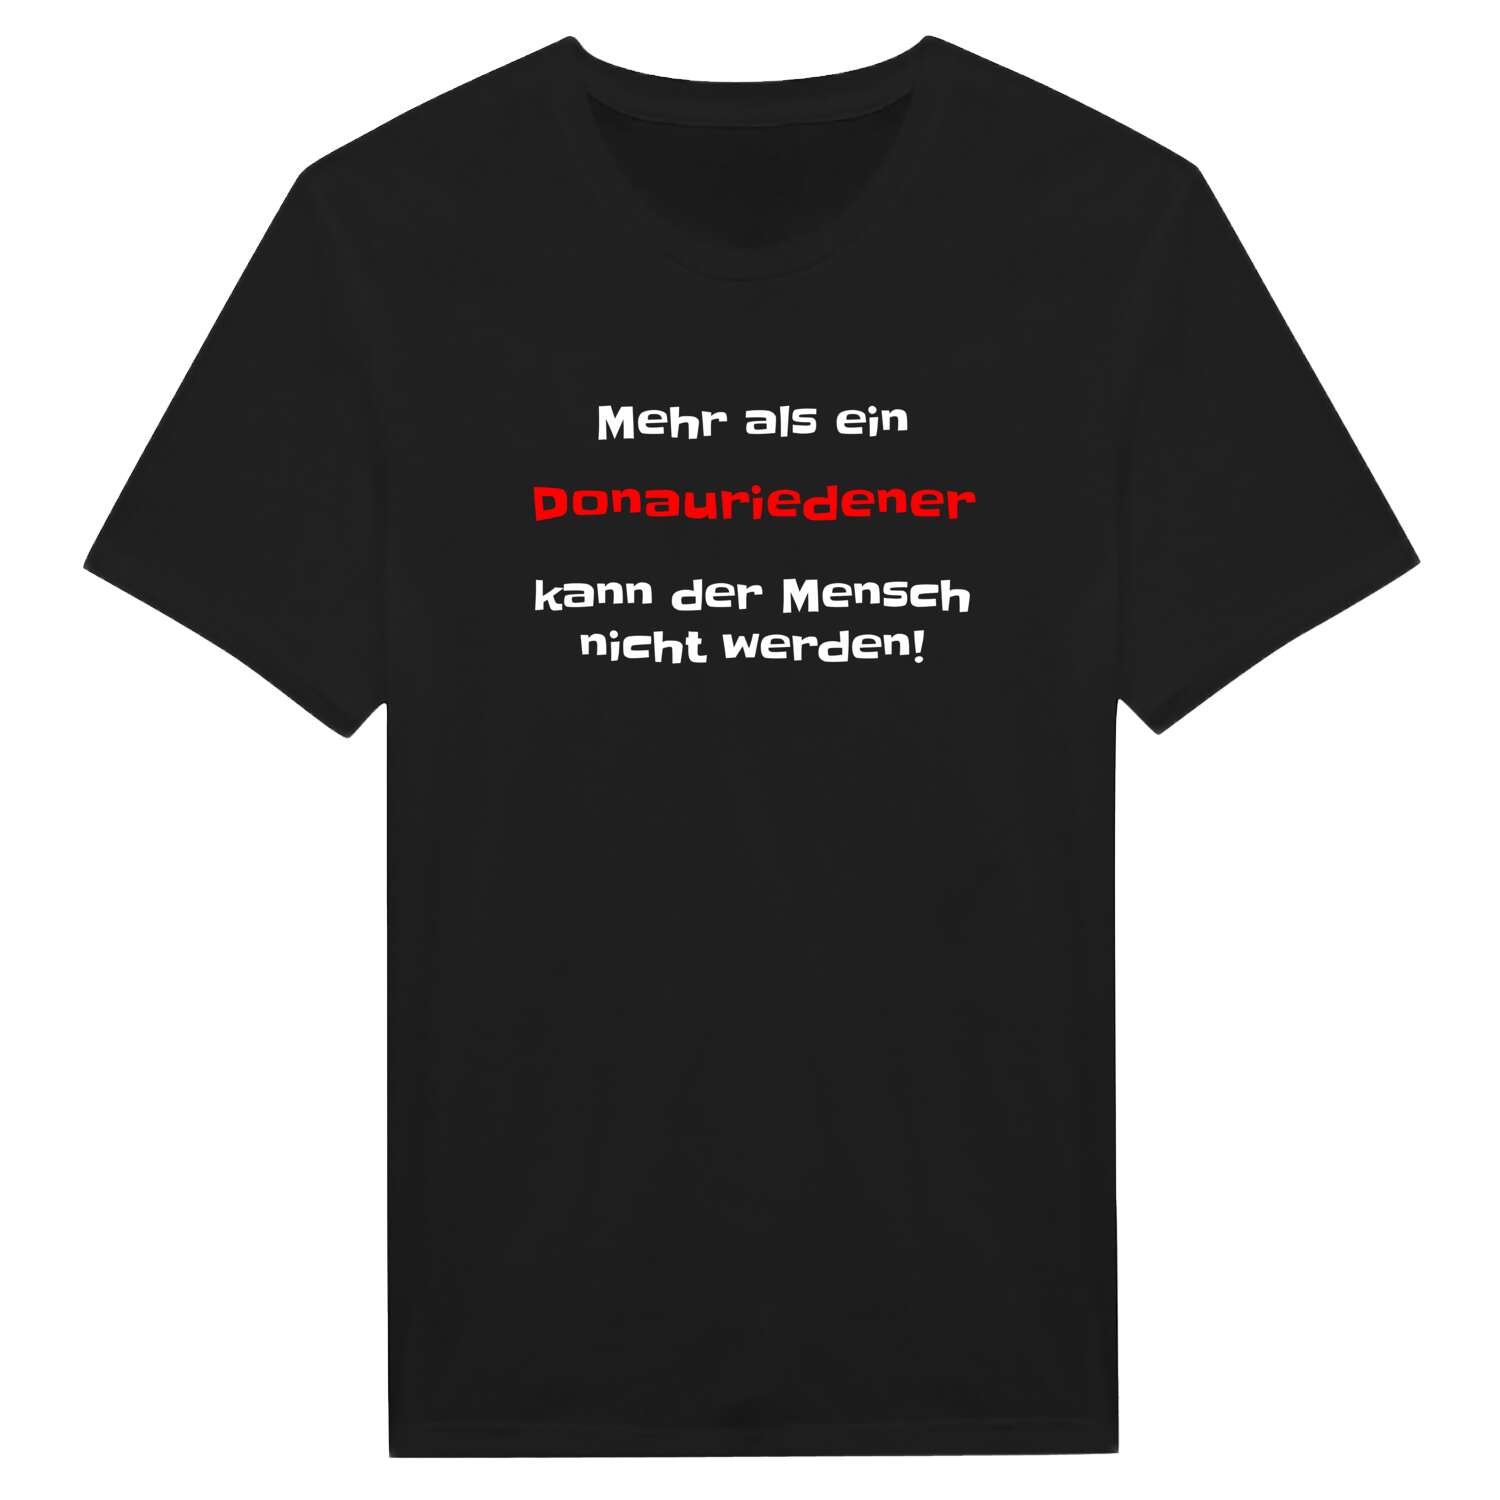 Donaurieden T-Shirt »Mehr als ein«